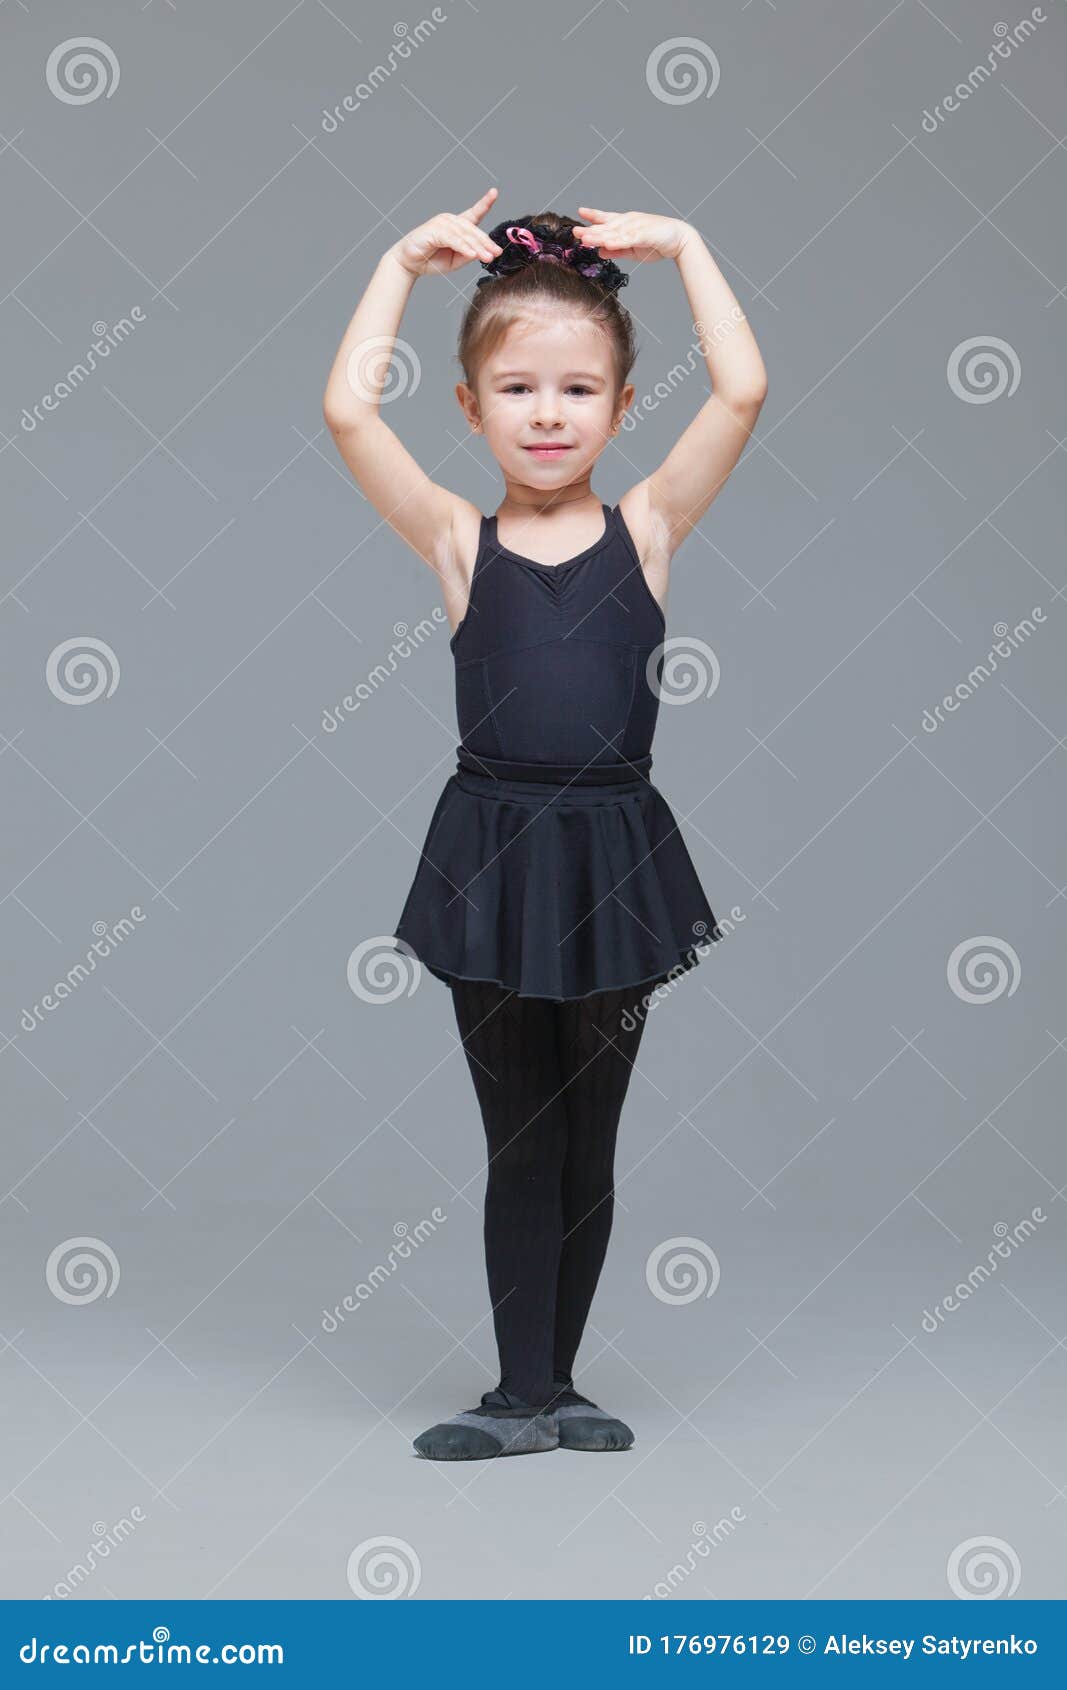 Bella Gimnasta De Niña En Ropa Negra Se a Convertir En Bailarina De Ballet Y Muestra Ejercicios En Gris de archivo - Imagen de actividad, lindo: